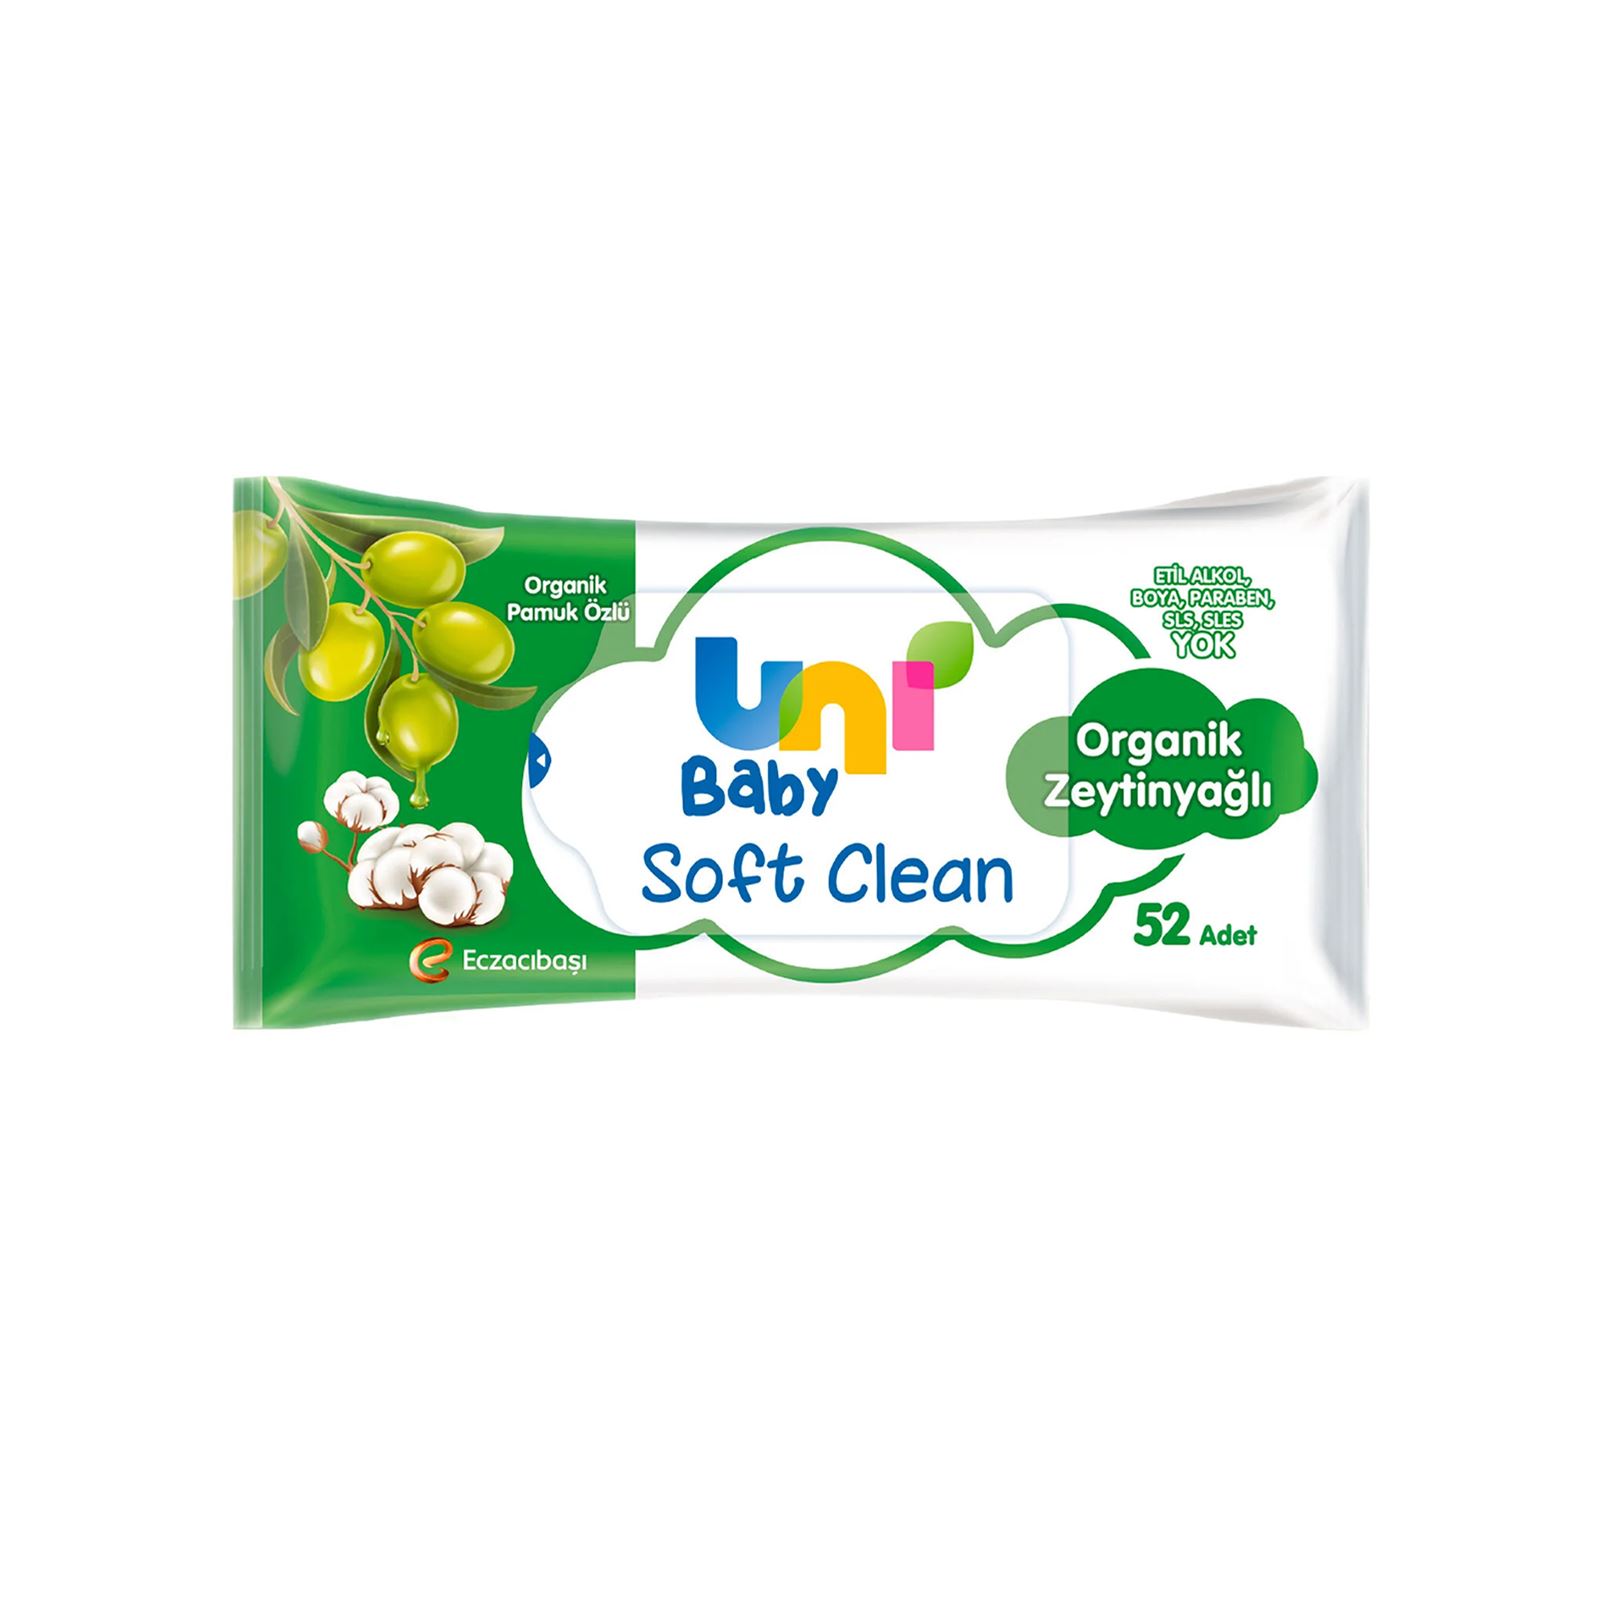 Uni Baby Soft Clean Organik Pamuk Özlü & Organik Zeytinyağlı Islak Mendil 24x52 Adet